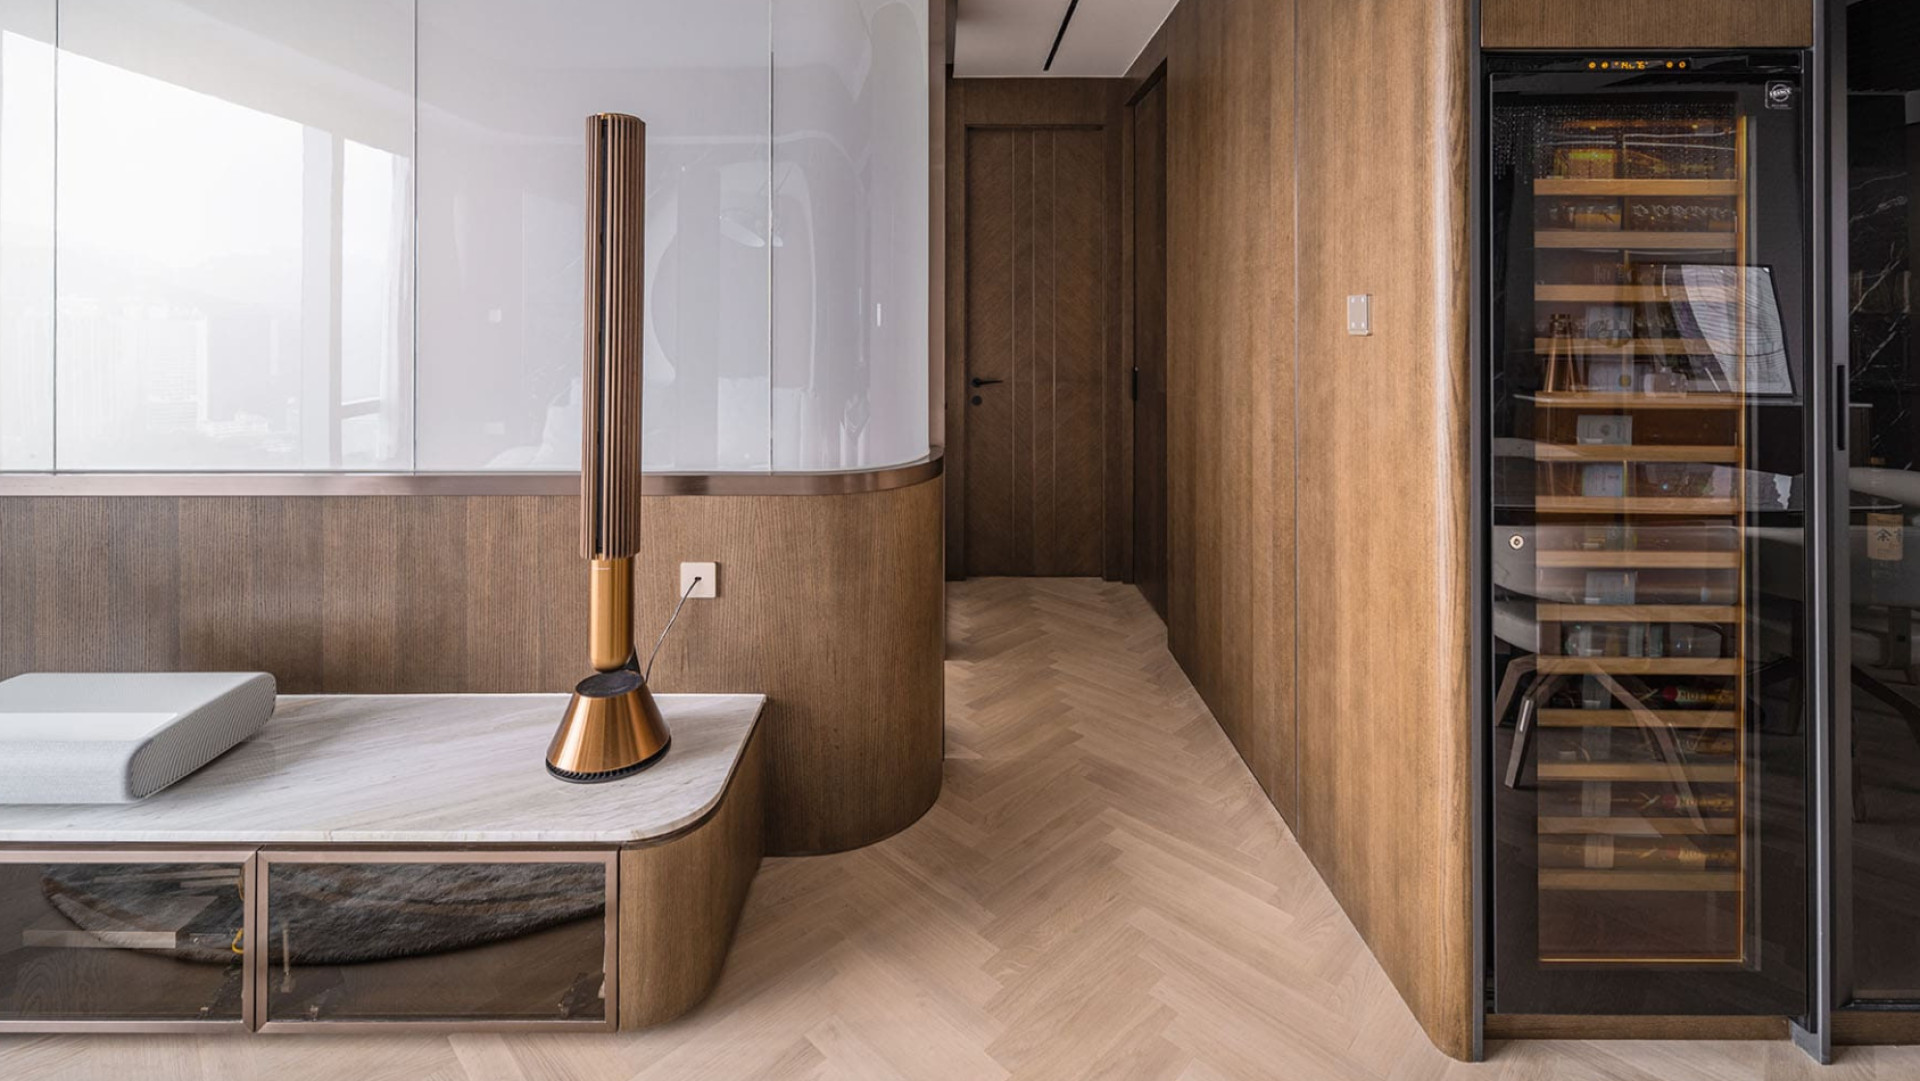 Large wine cooler built into a wooden ambiance design living room furniture - interior designer.